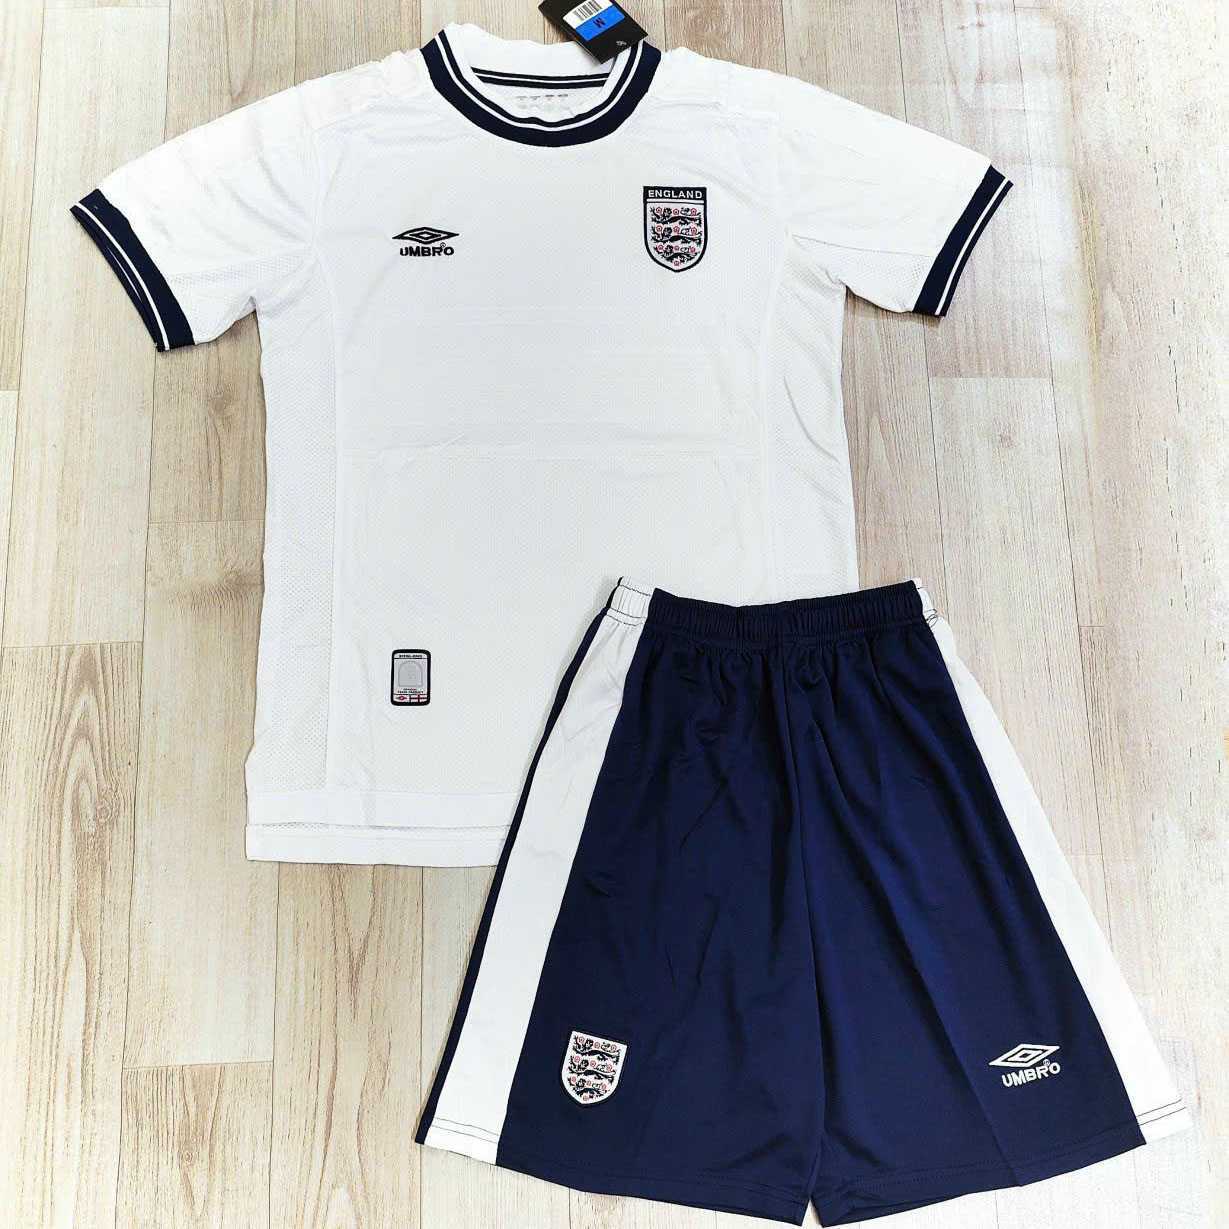 Bộ quần áo đá bóng đội tuyển anh logo england umbro màu full trắng quần tím than đen có túi 1